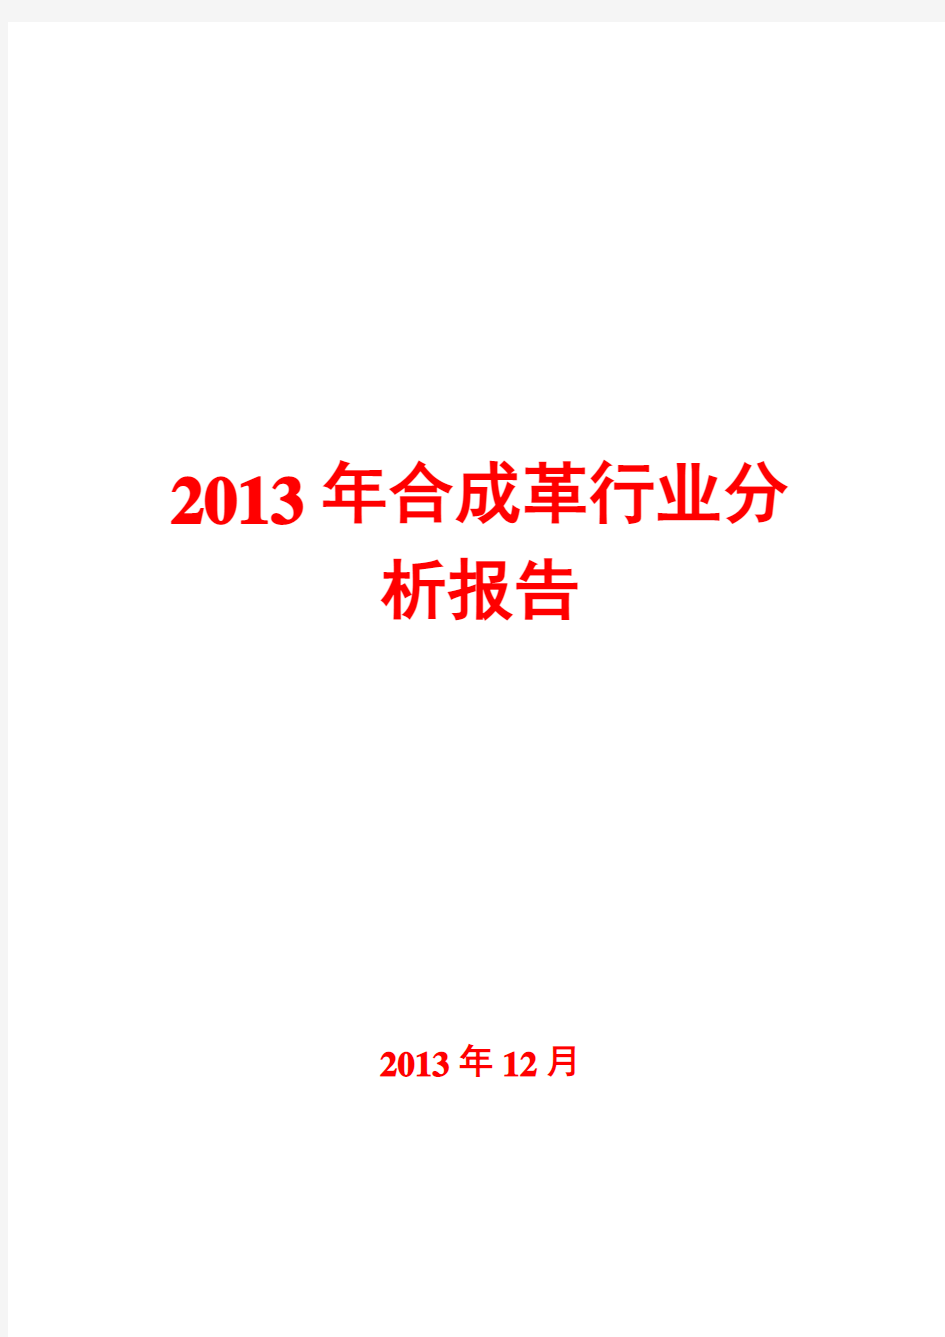 2013年合成革行业分析报告